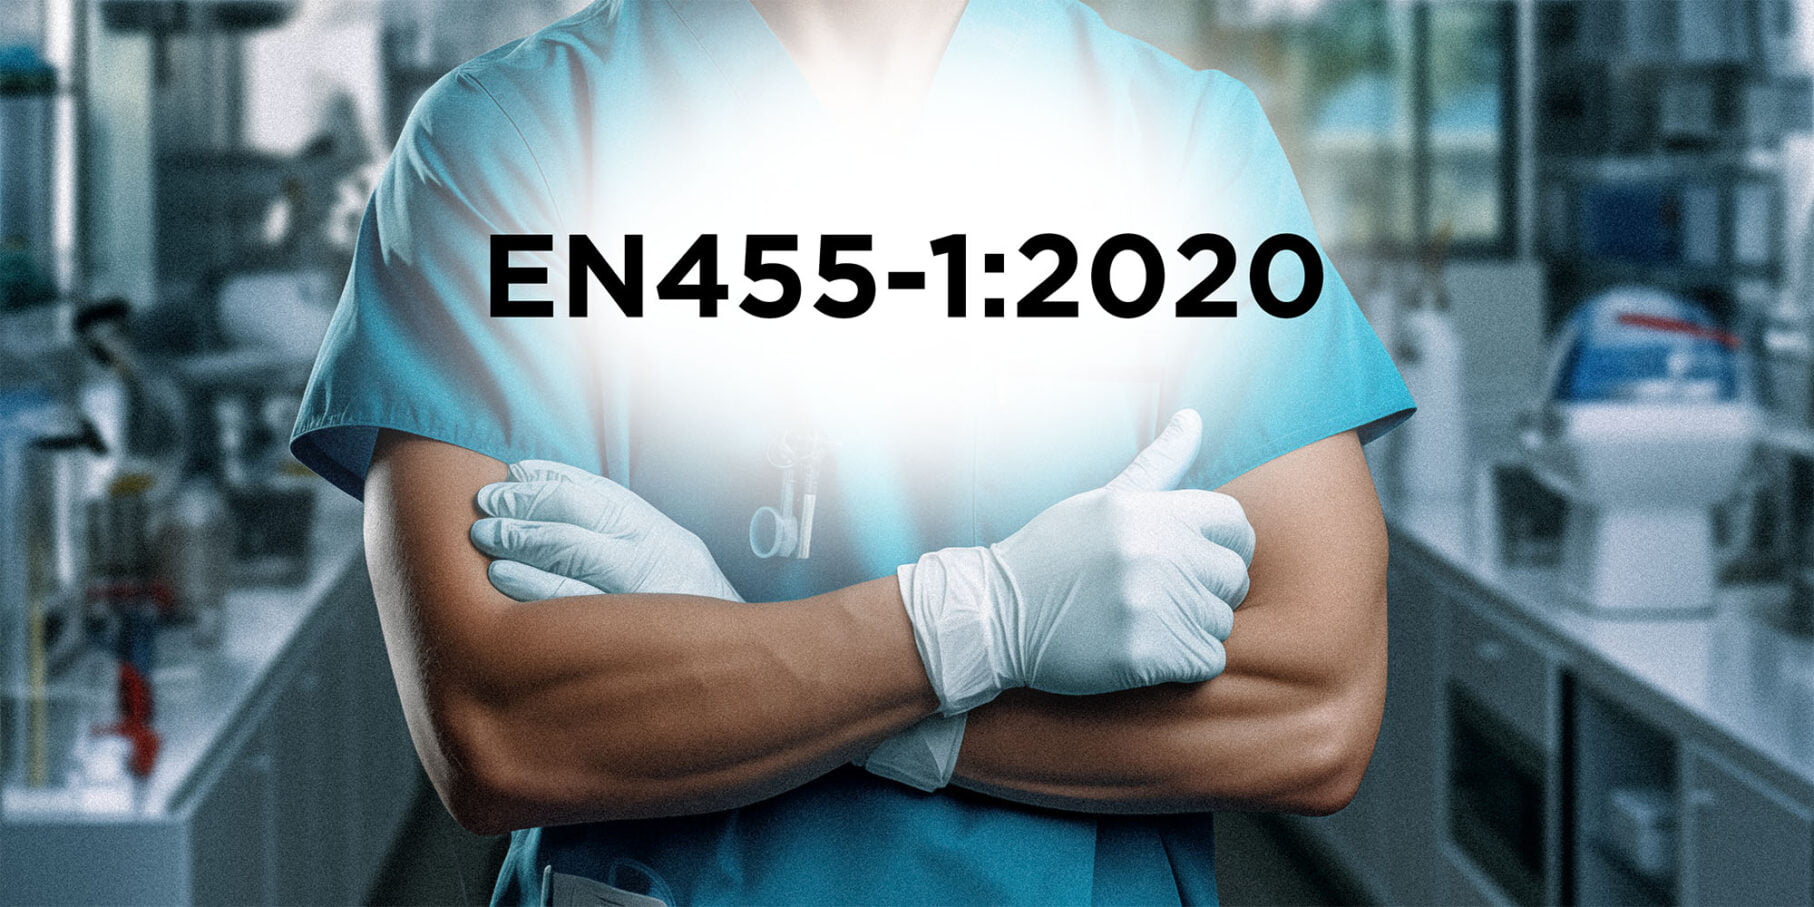 EN455-1 by Eastwest Medico